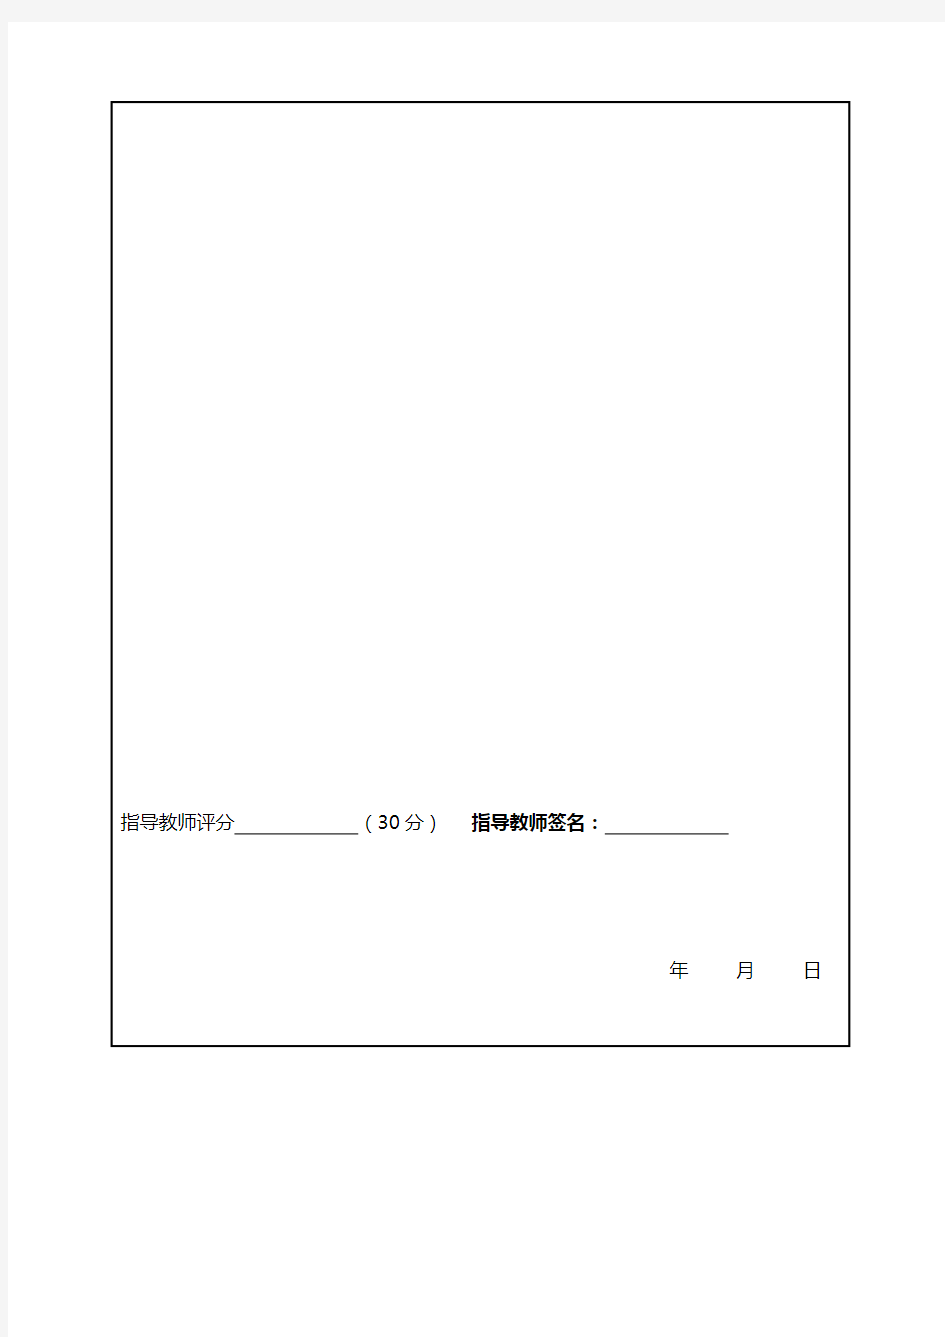 上海电机学院本科生毕业设计(论文)成绩考核表(一)